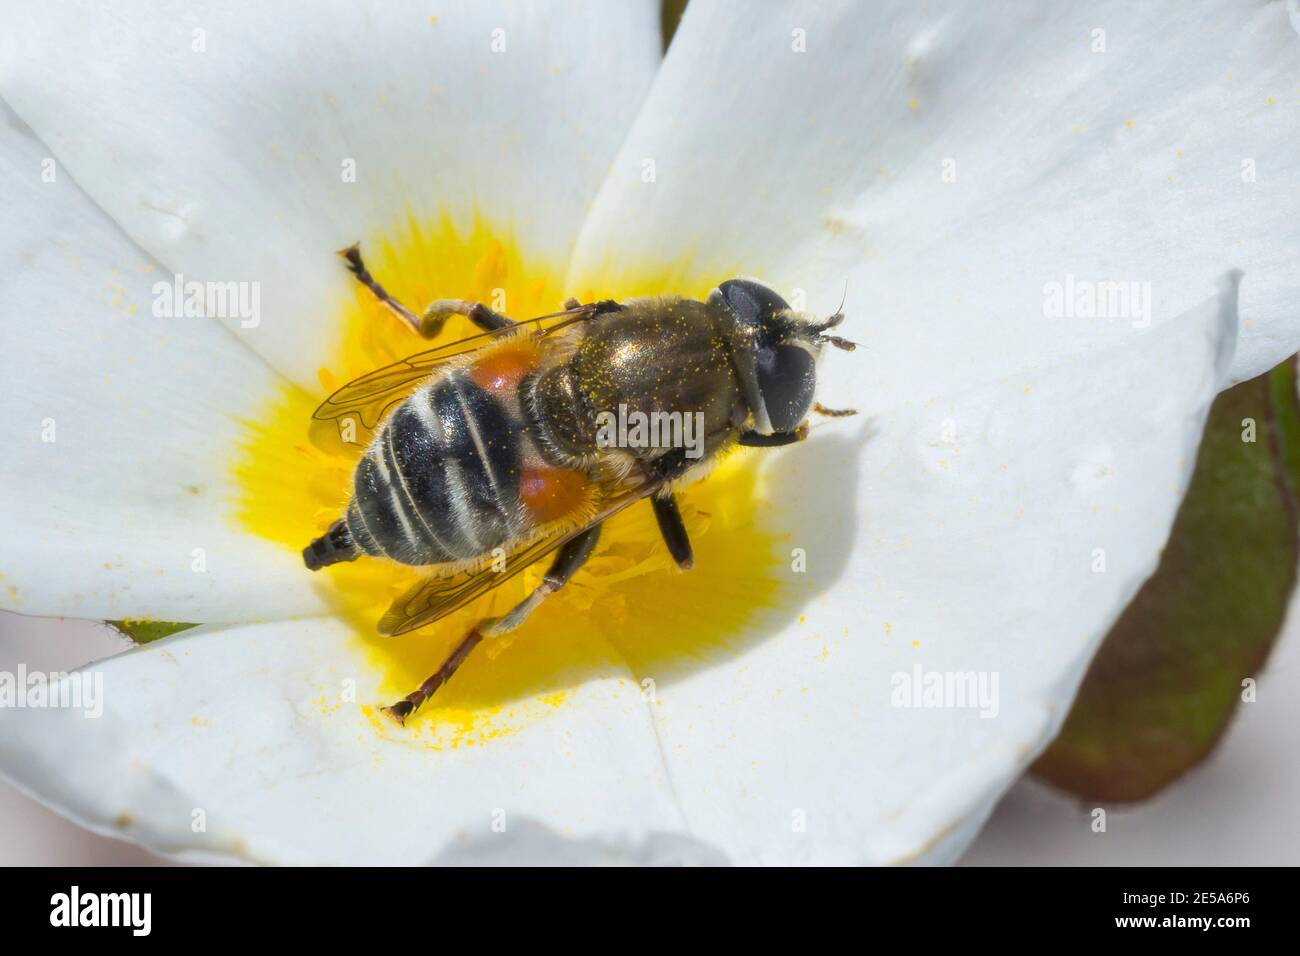 Planque (Merodon spec.), se trouve sur une fleur, Allemagne Banque D'Images